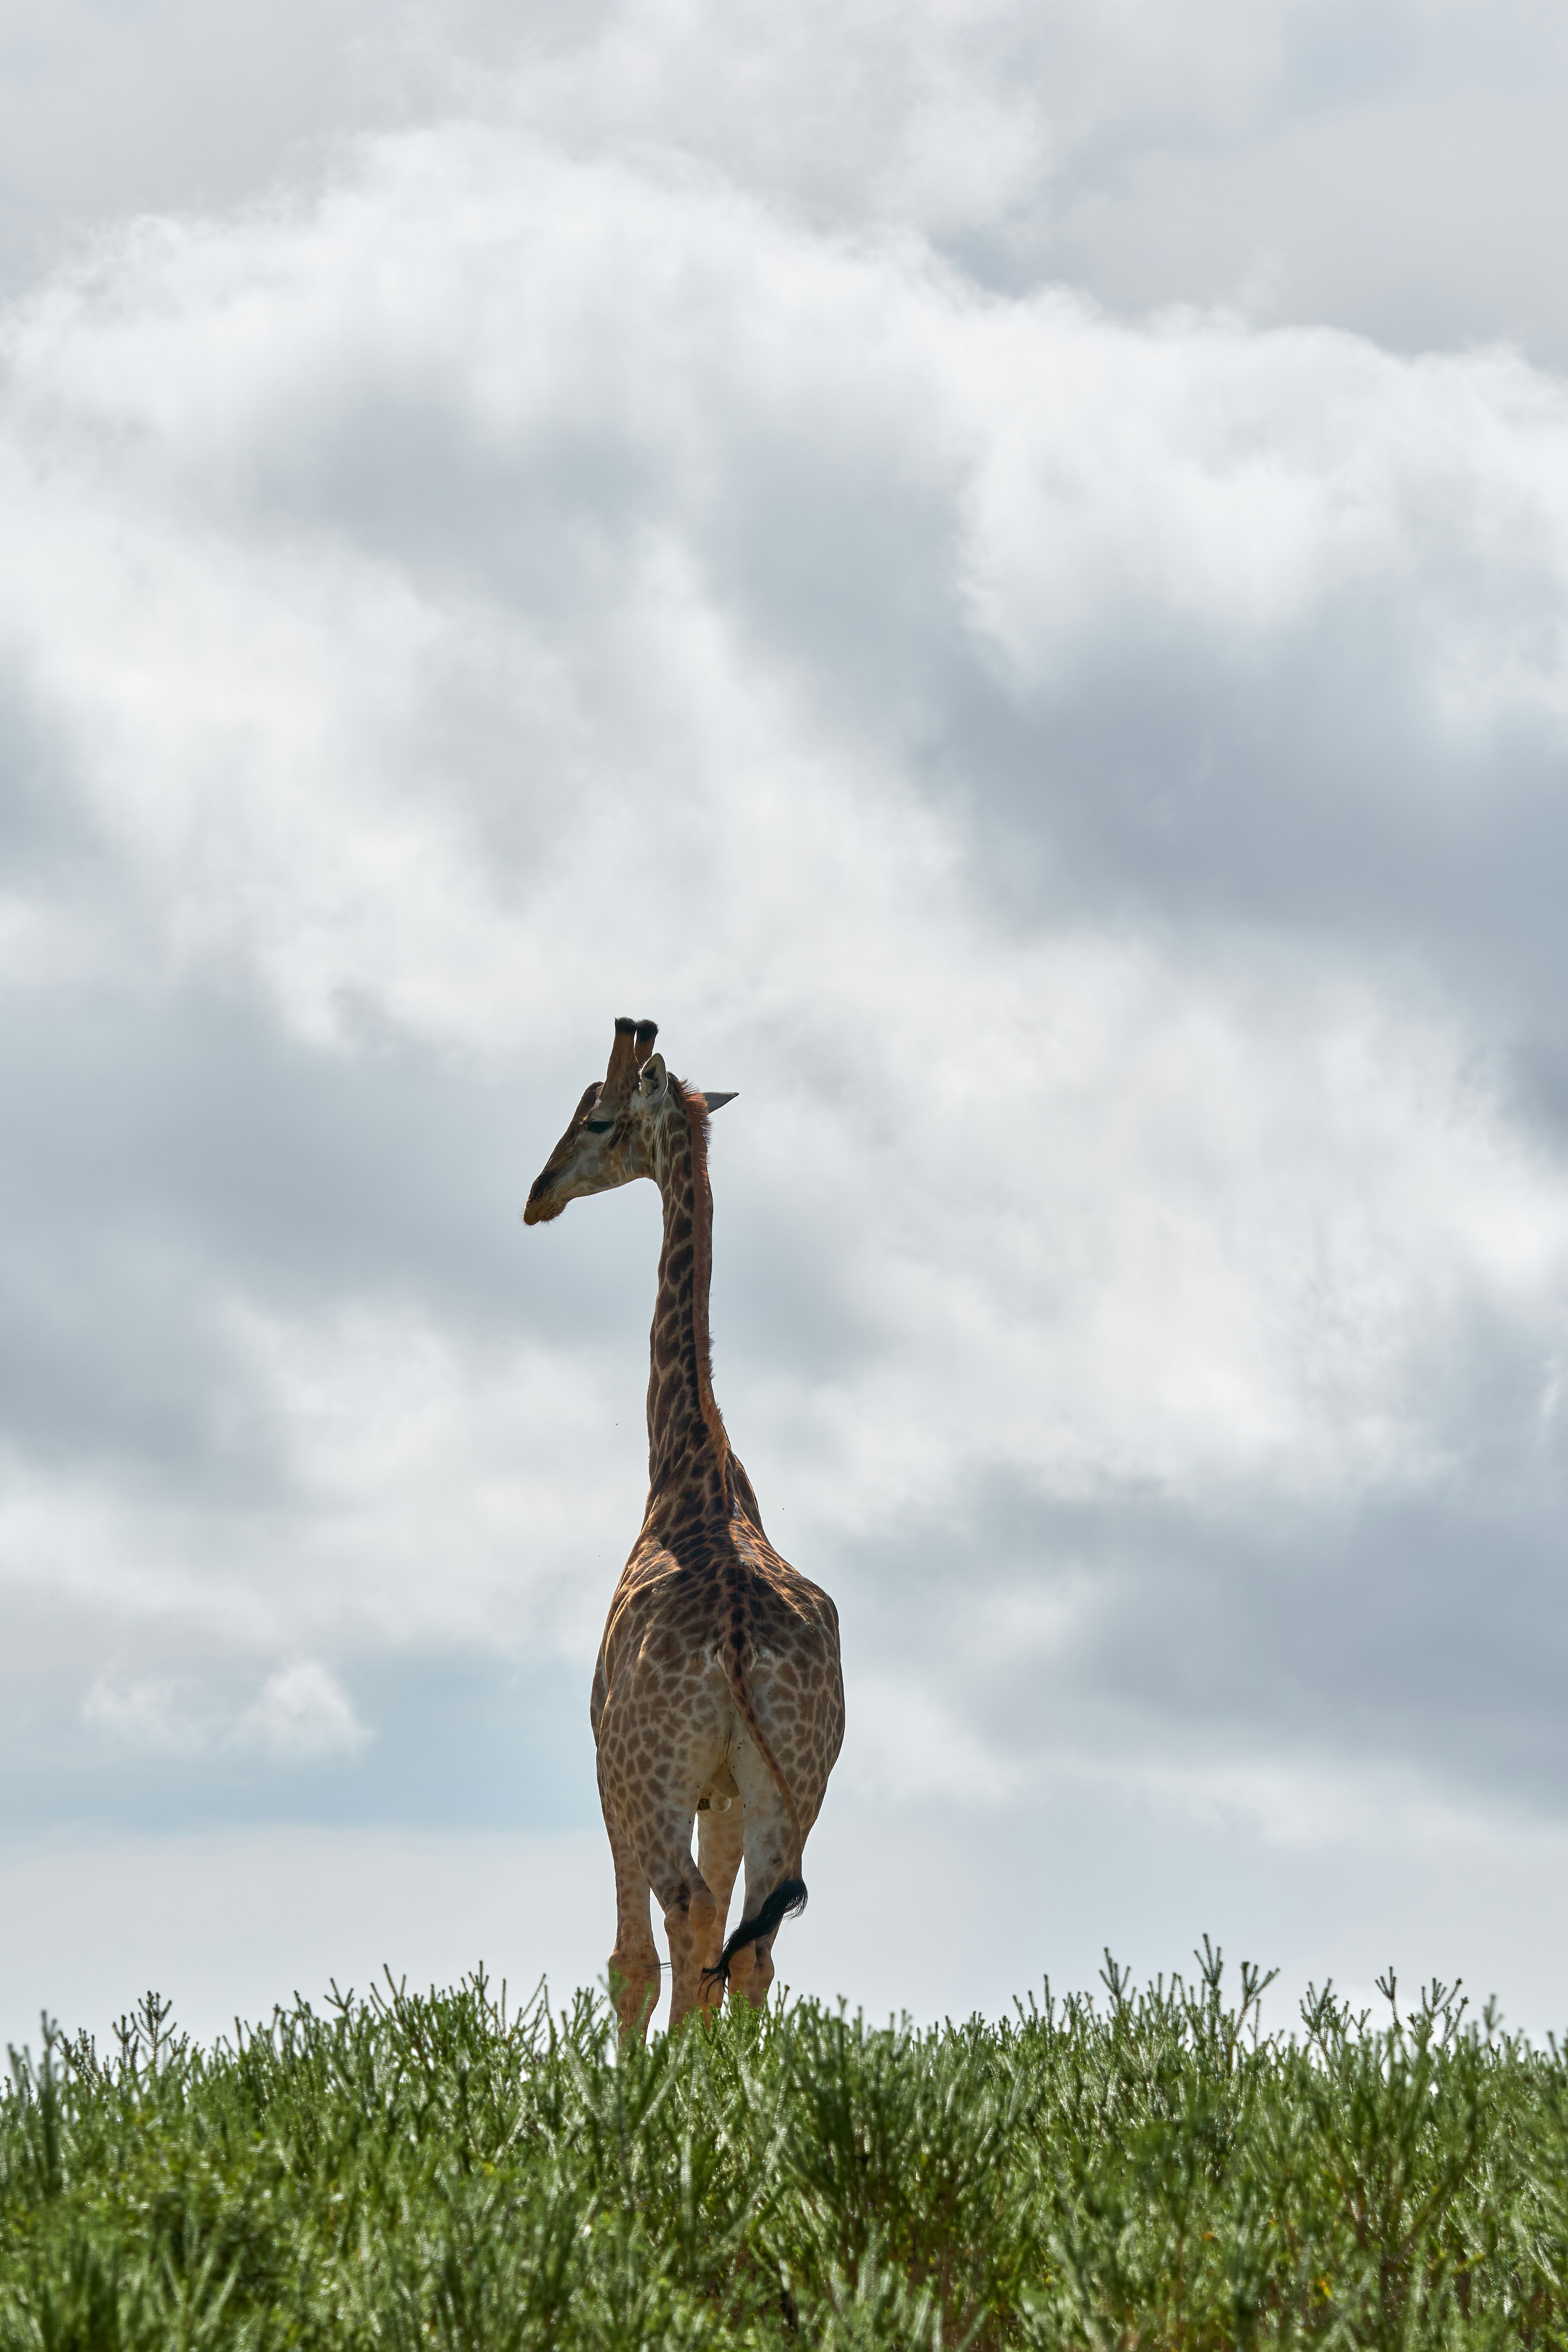 giraffe standing on grass field